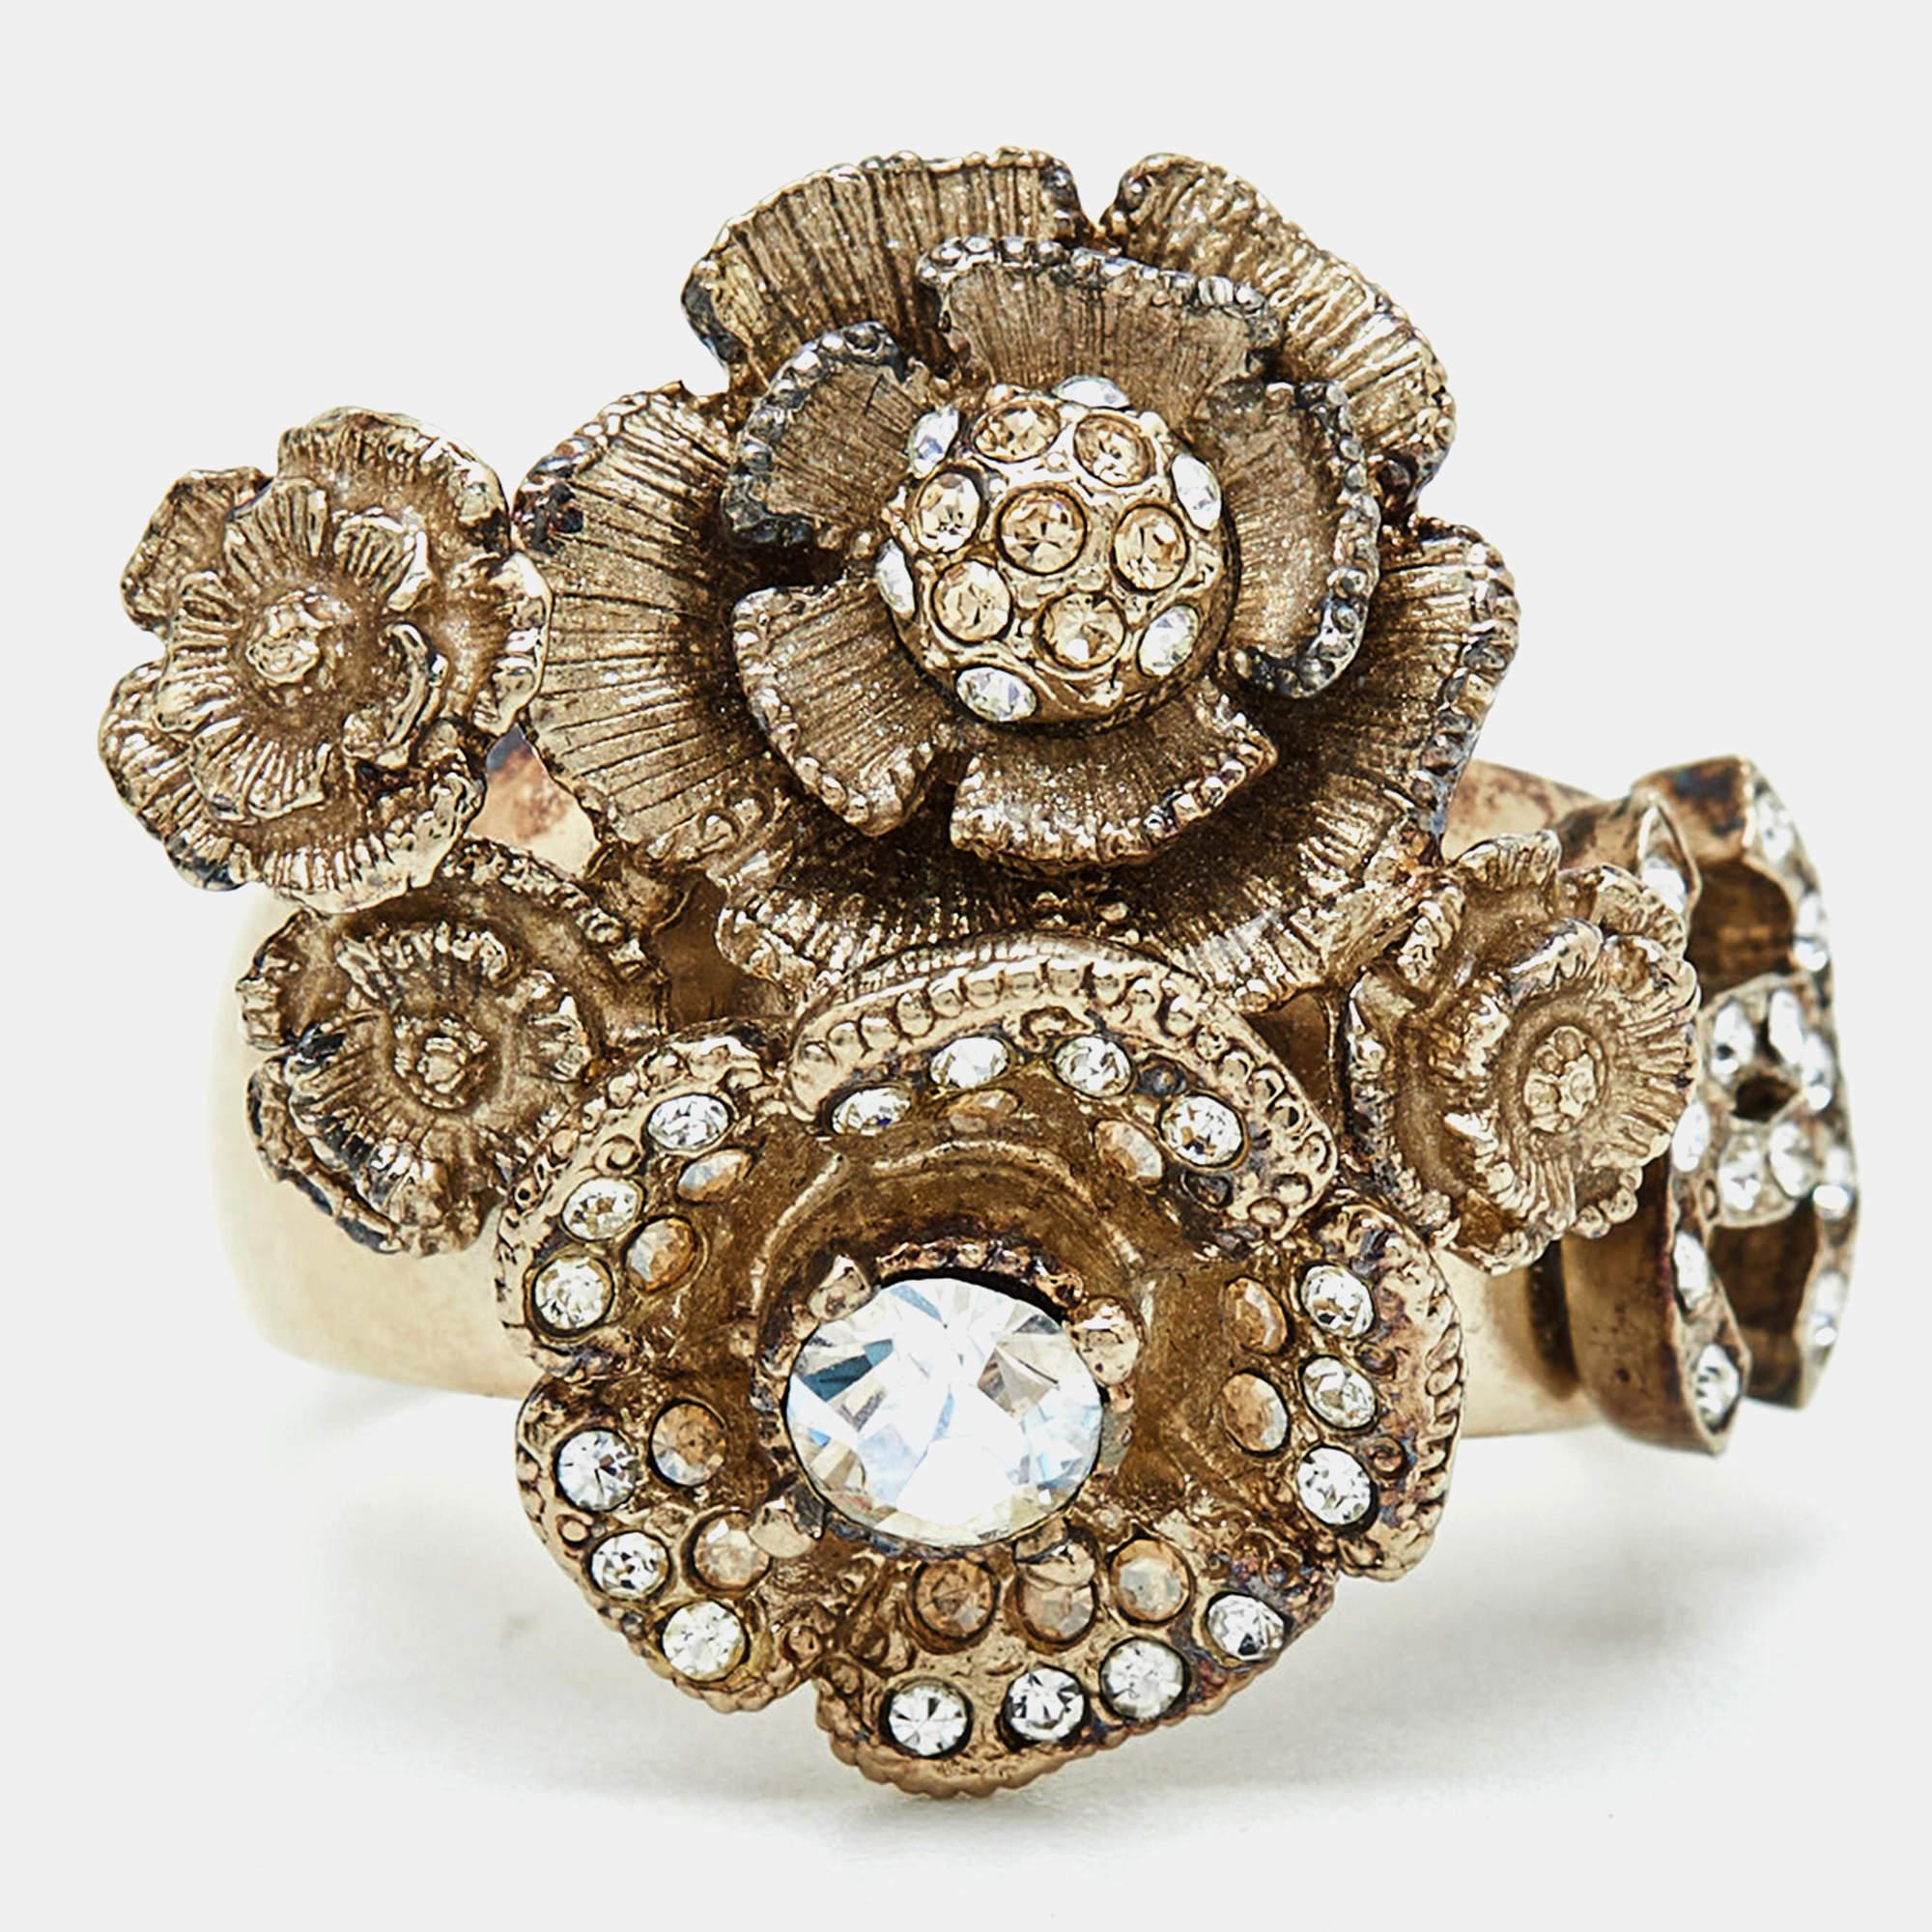 Um Ihre Finger auf die eleganteste Weise zu schmücken, bringen wir Ihnen diesen Chanel Ring. Er wurde aus hochwertigen MATERIALEN gefertigt und wird Ihren Look sofort aufwerten.

